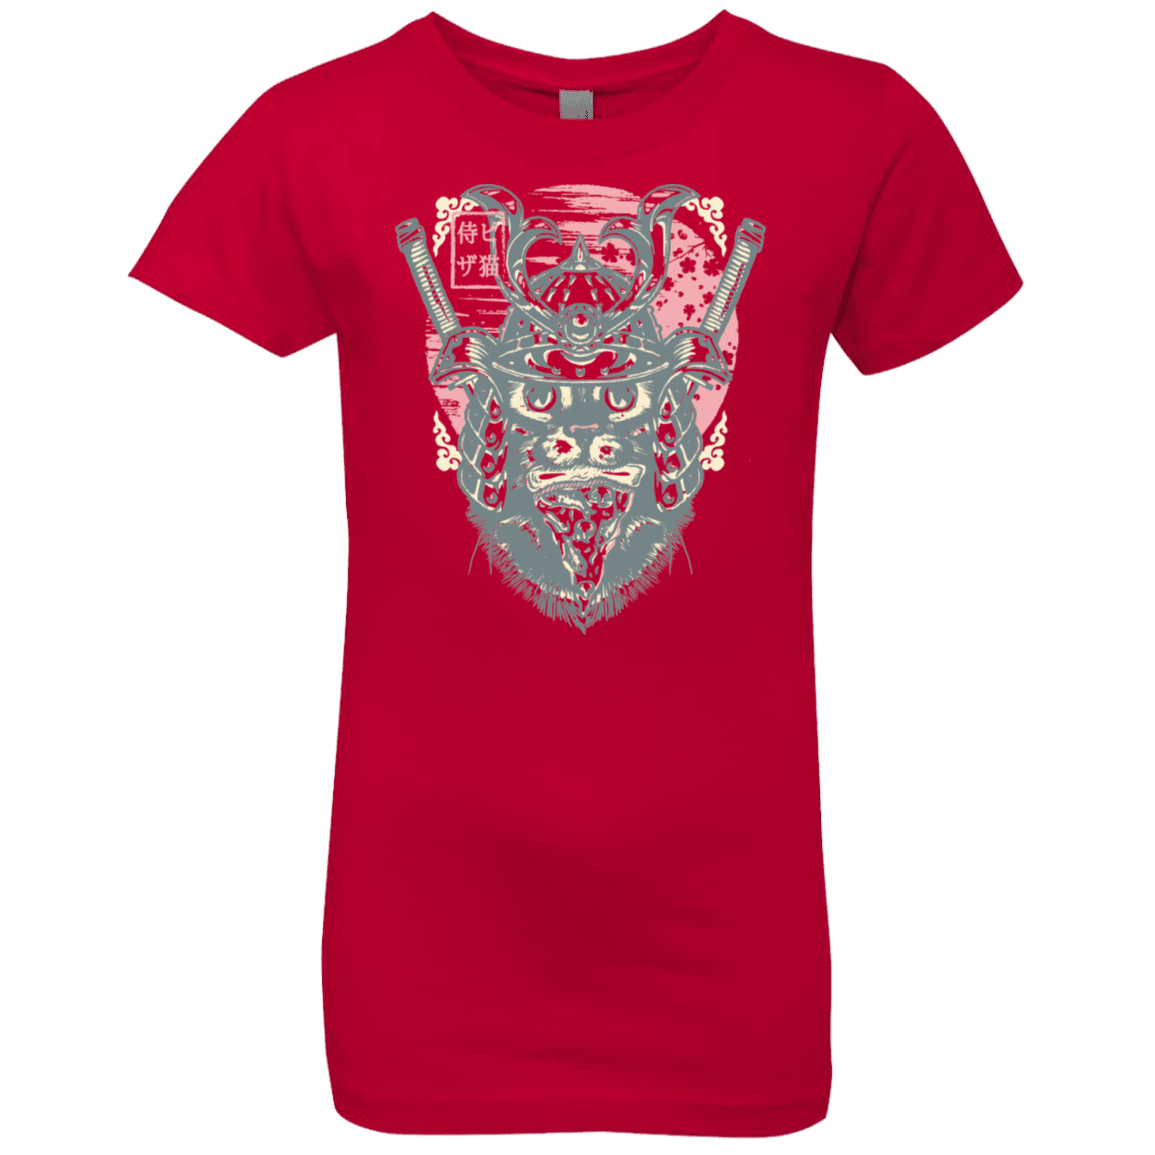 T-Shirts Red / YXS Samurai Pizza Cat Girls Premium T-Shirt